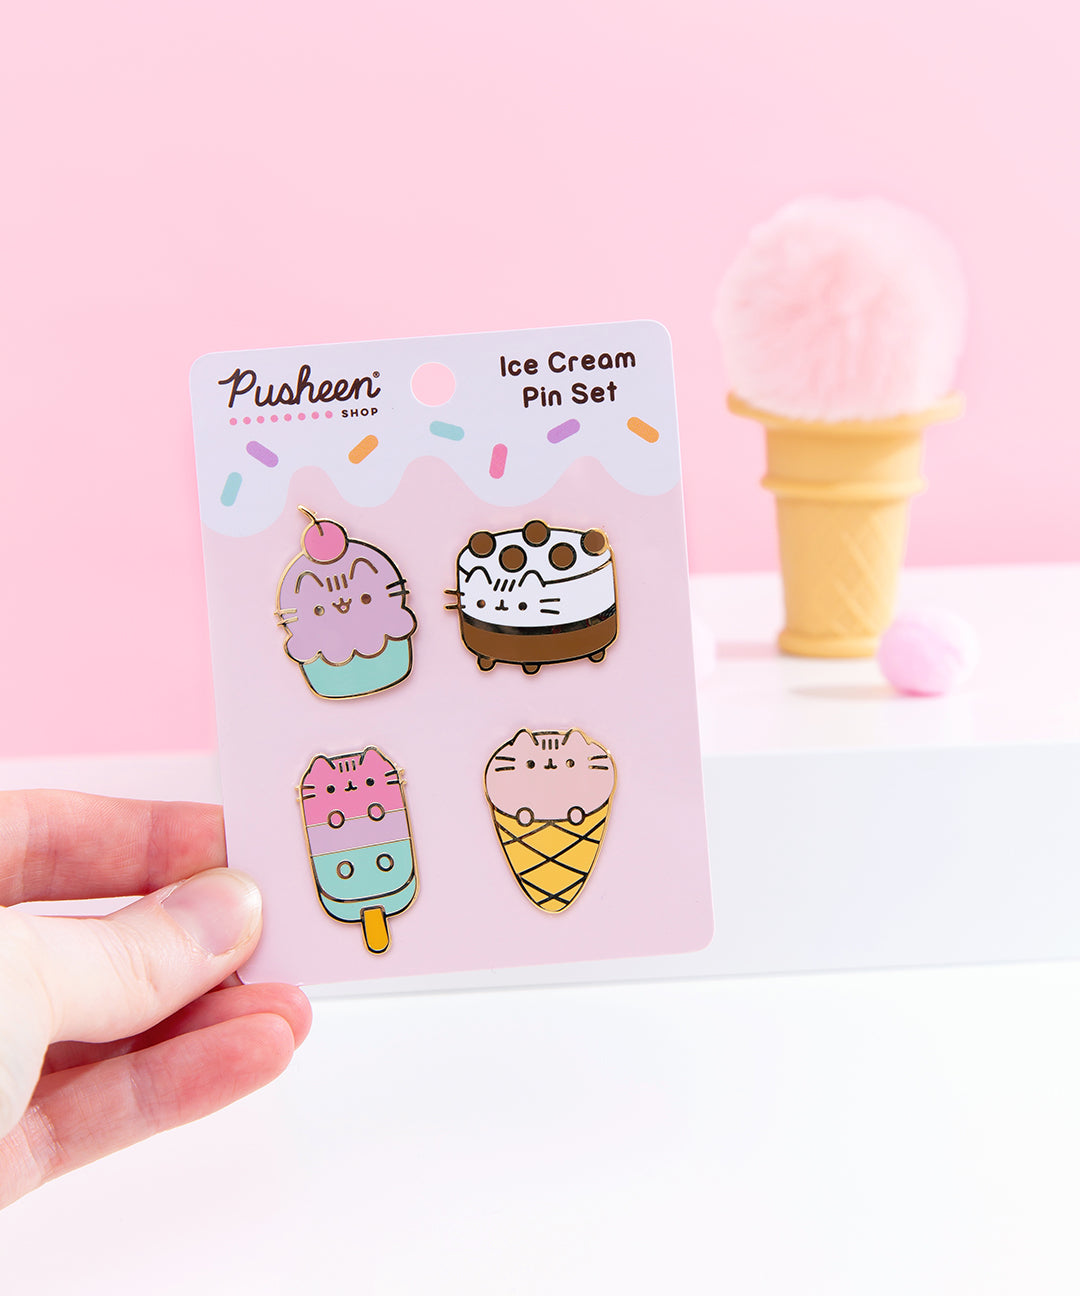 Pusheen Ice Cream Pin Set – Pusheen Shop